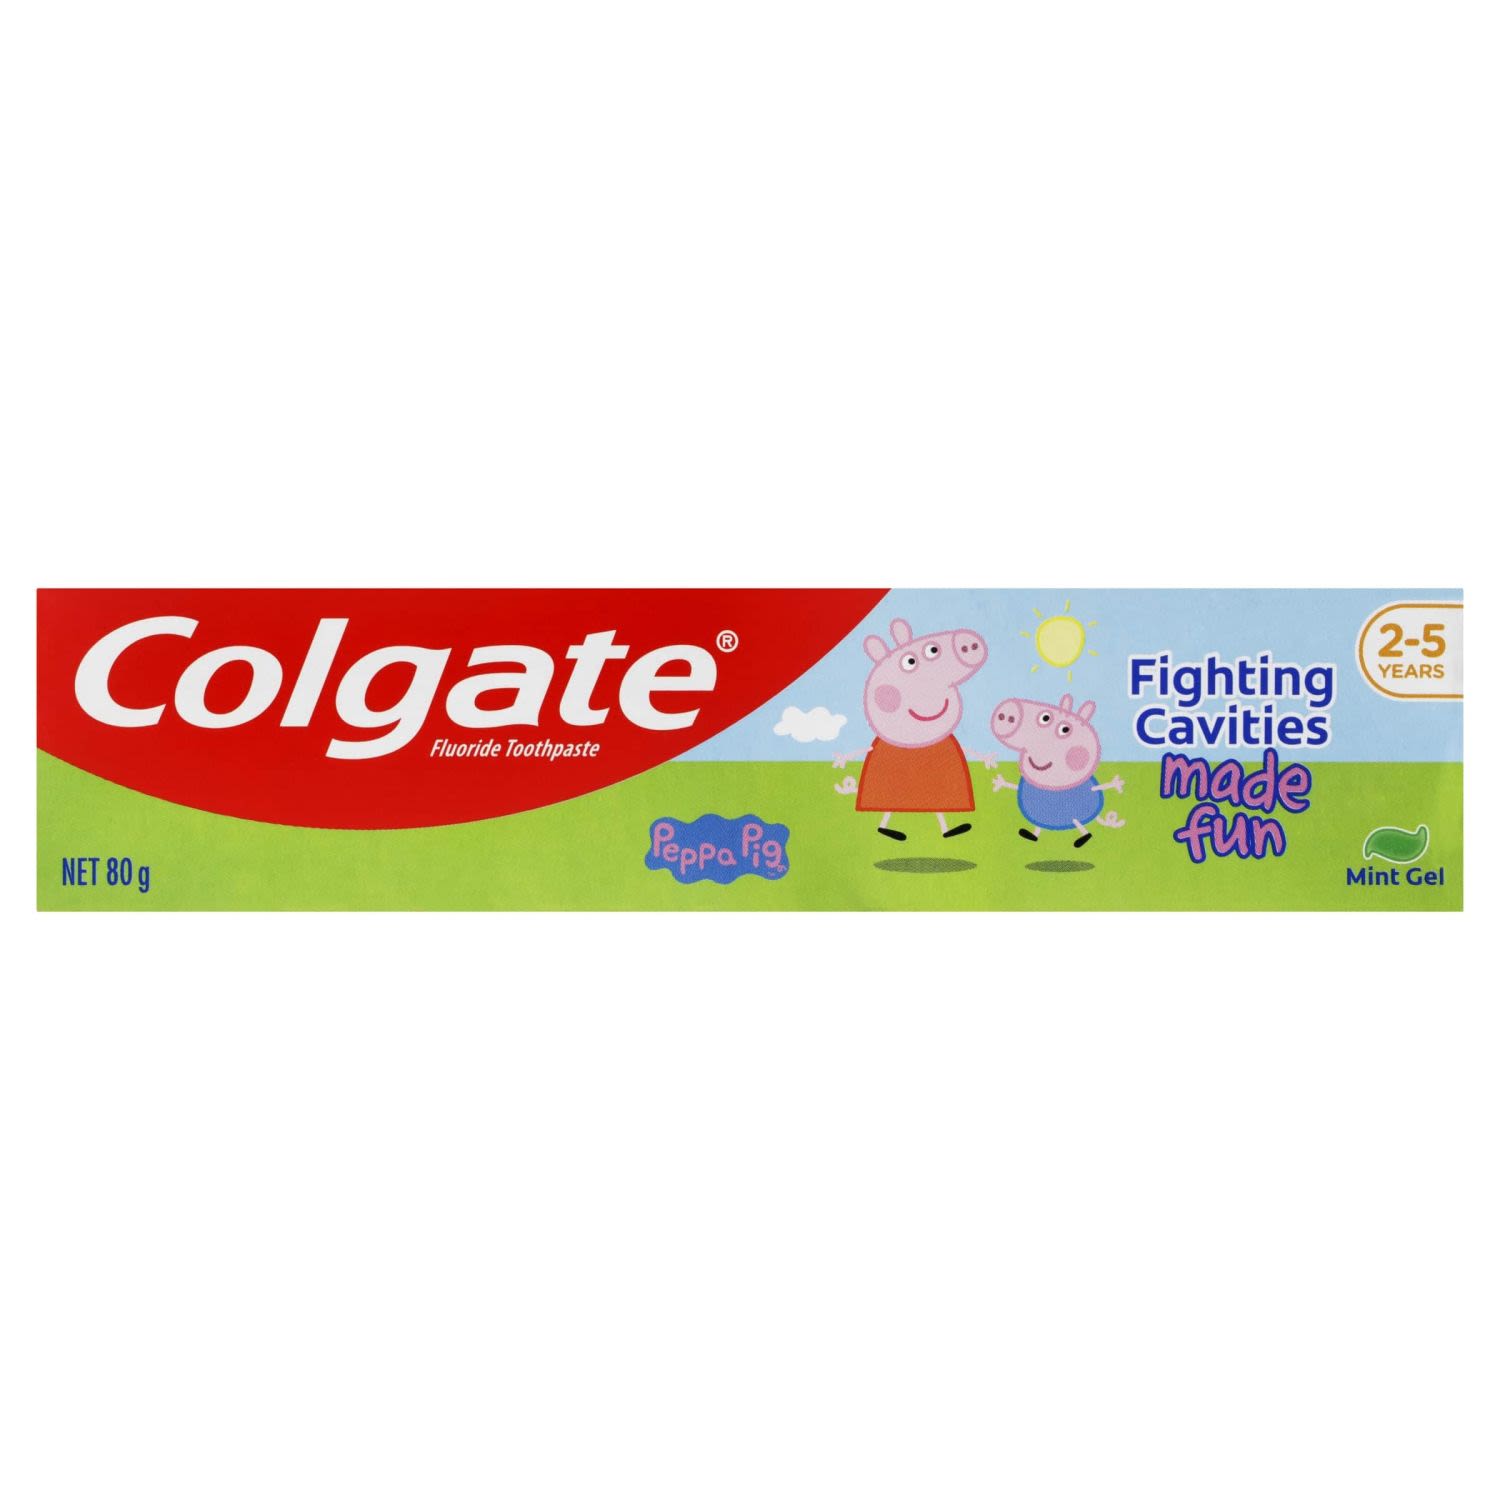 Colgate Peppa Pig Kids Toothpaste Mint Gel 2-5 Years, 80 Gram